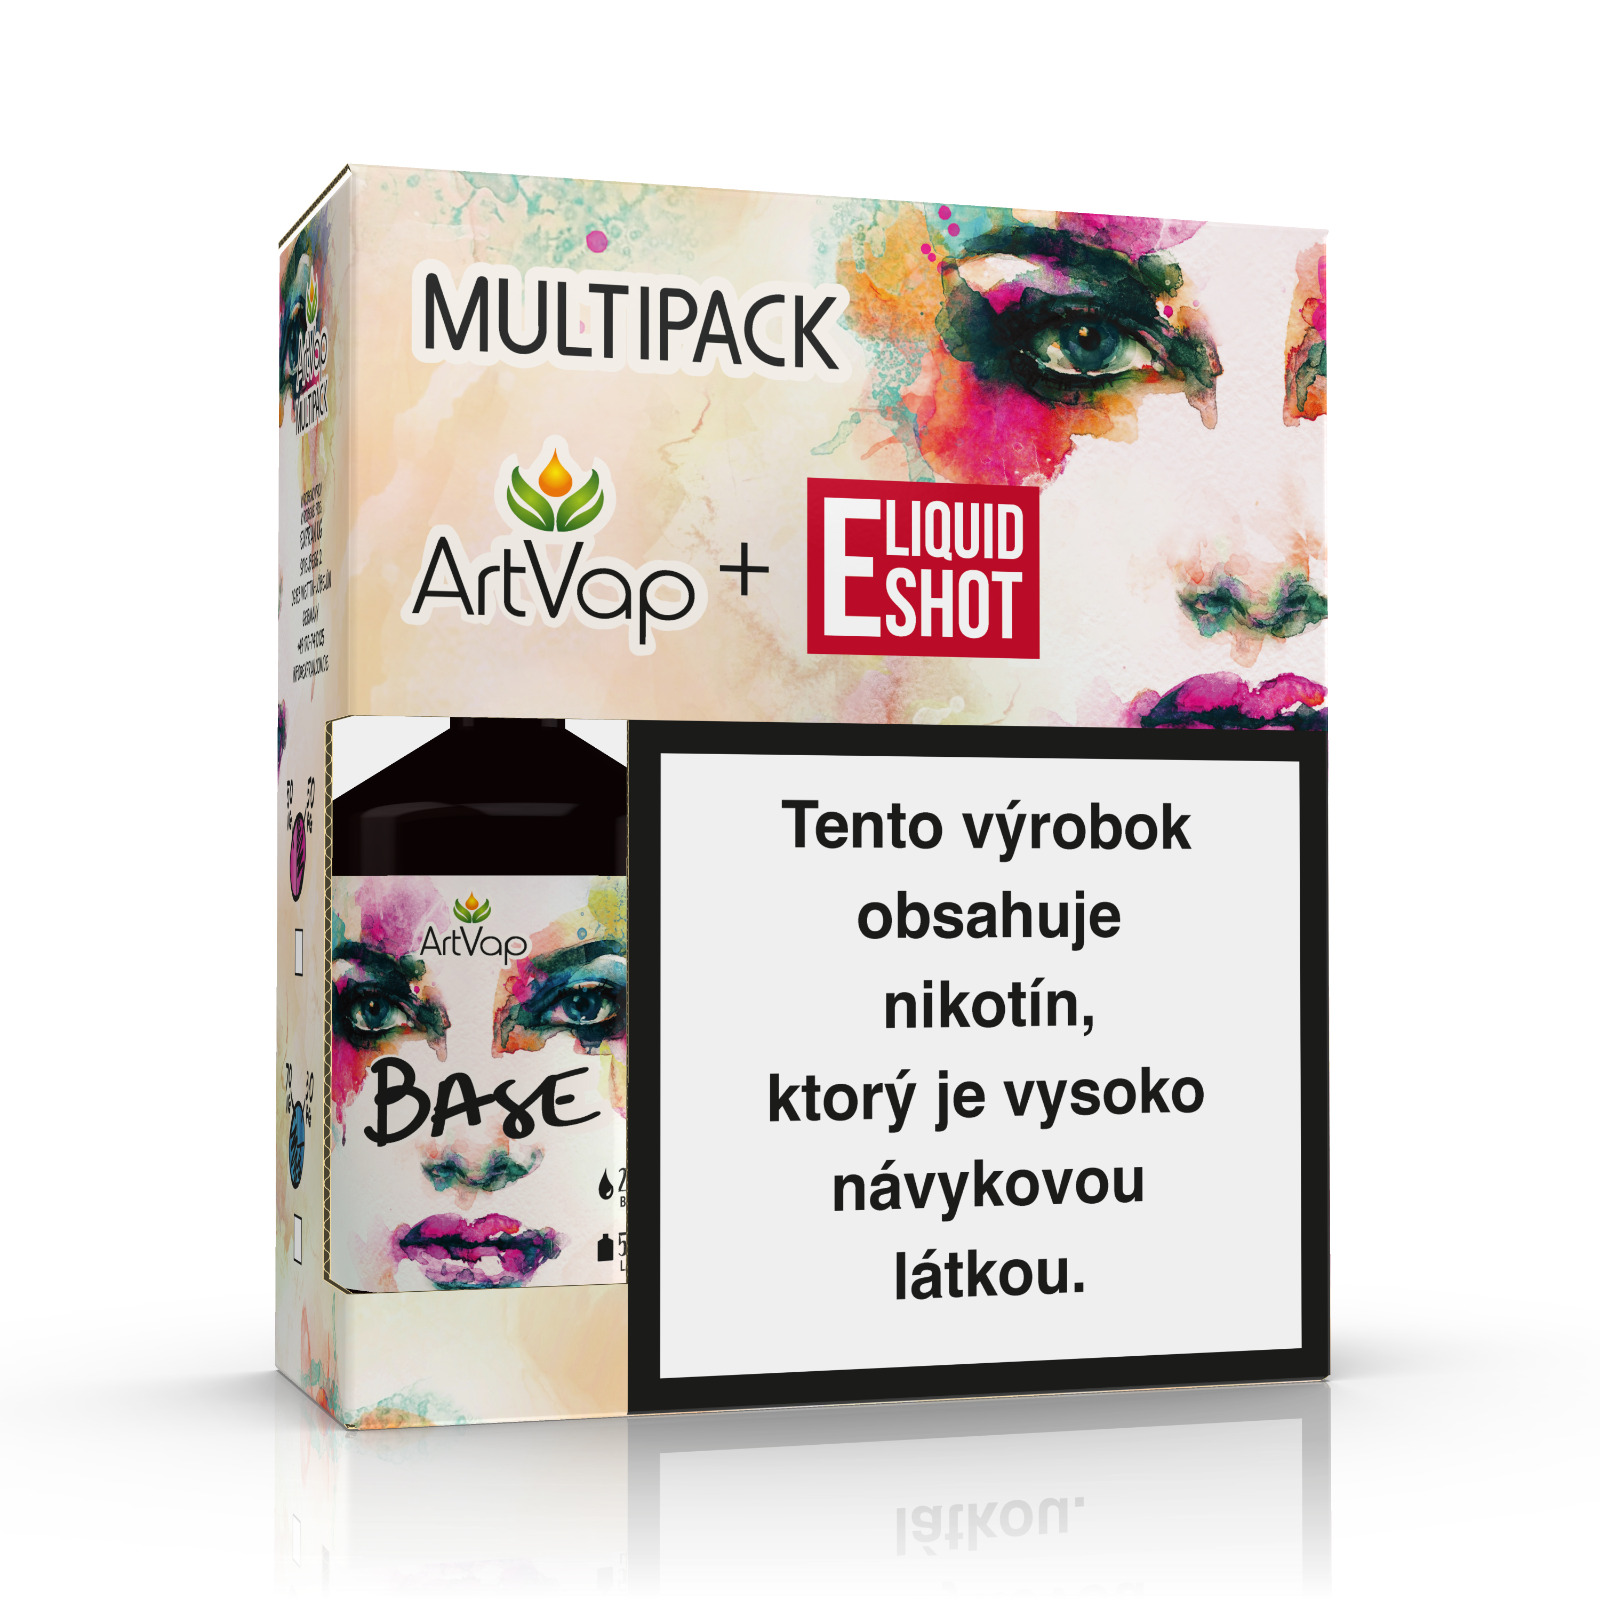 Multipack 500 ml 50PG/50VG 12 mg/ml ArtVap